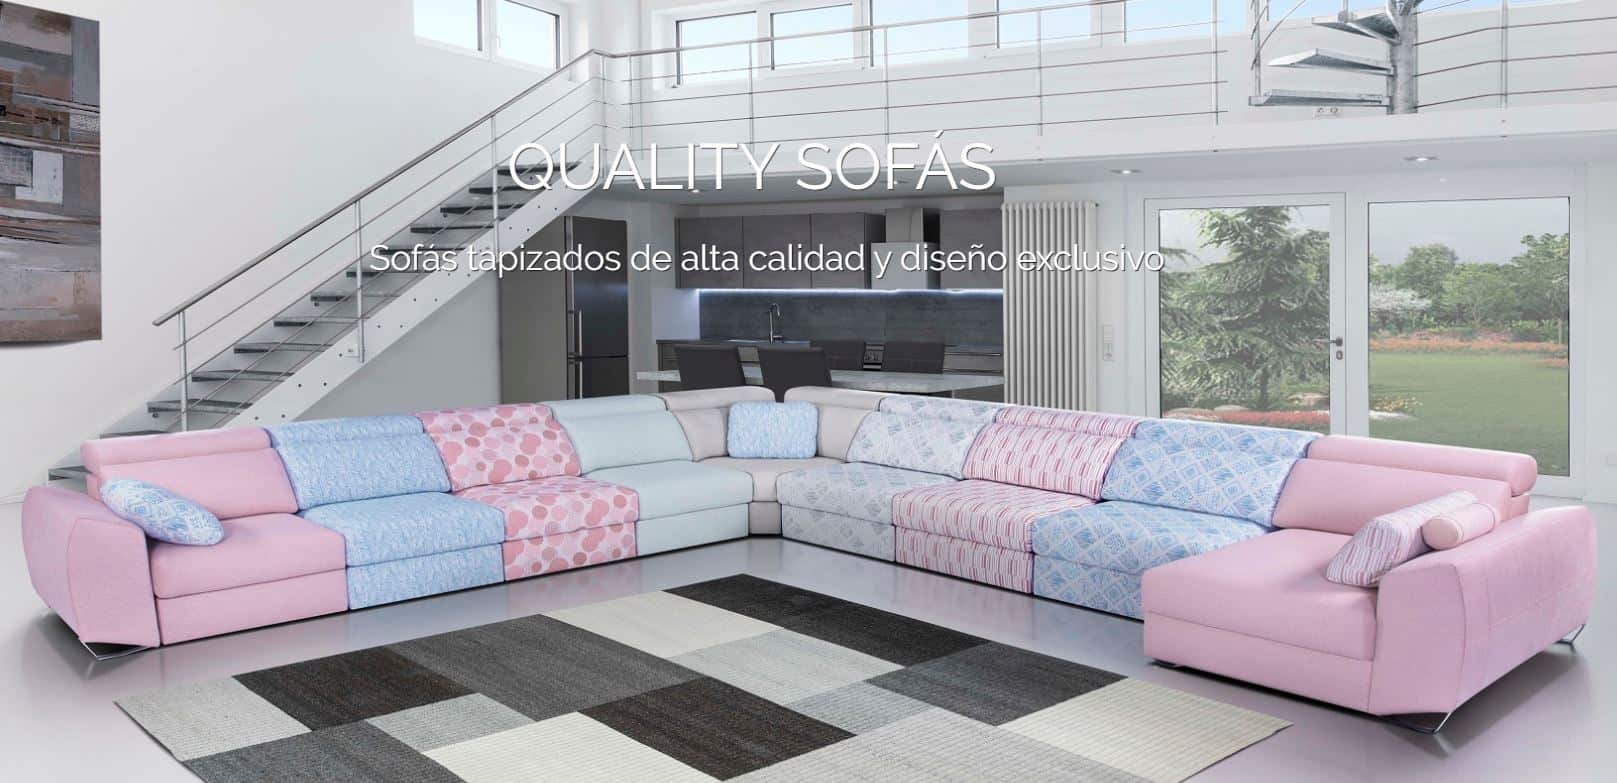 quality-sofas-millani-producto